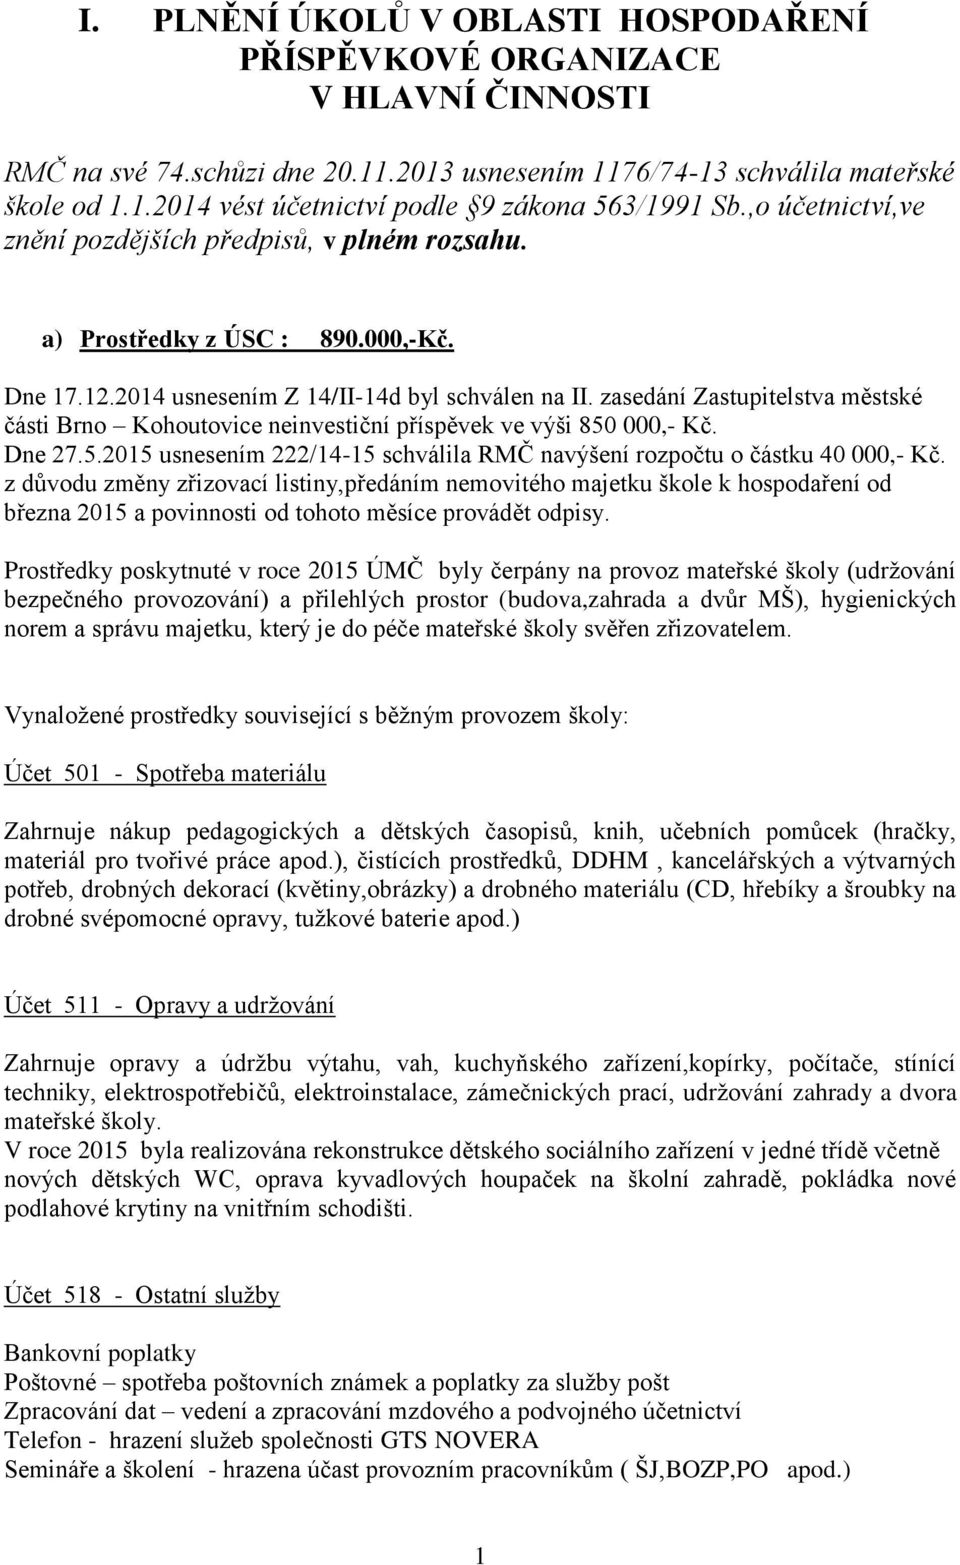 zasedání Zastupitelstva městské části Brno Kohoutovice neinvestiční příspěvek ve výši 850 000,- Kč. Dne 27.5.2015 usnesením 222/14-15 schválila RMČ navýšení rozpočtu o částku 40 000,- Kč.